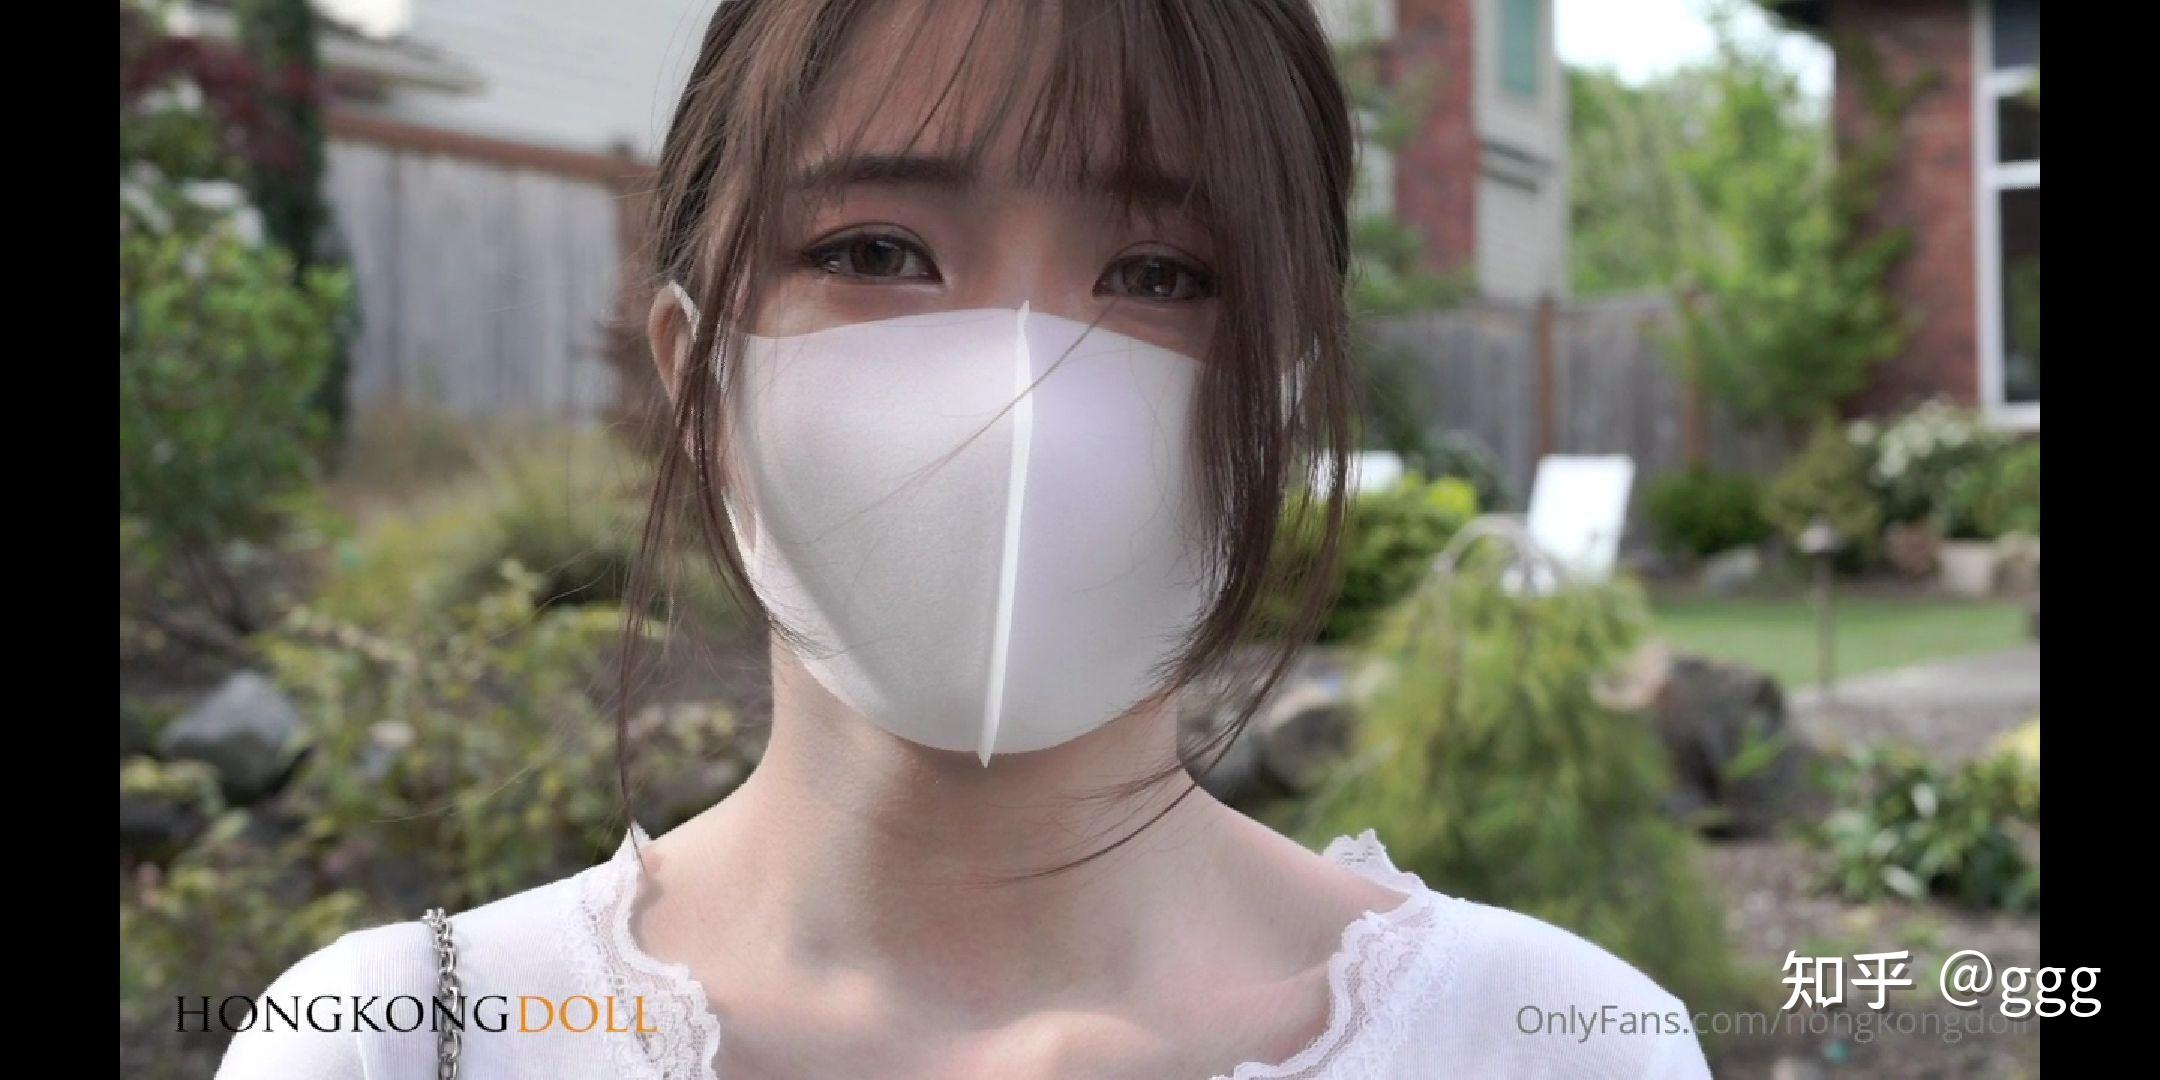 玩偶姐姐 HongkongDoll 陪玩系列视频在线观看 – 橘柚小站